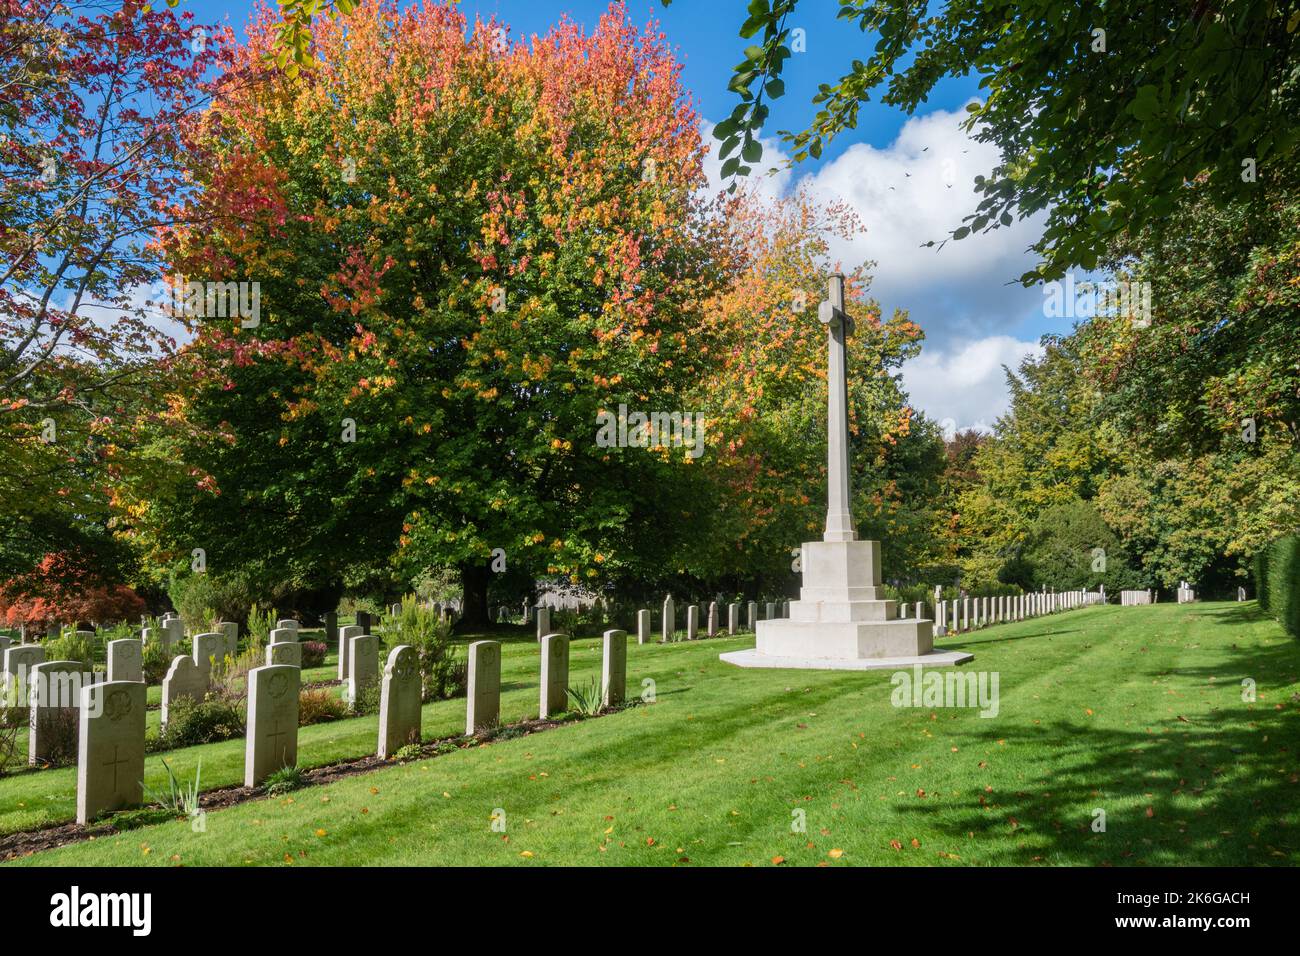 Croix commémorative et tombes de soldats canadiens de la première guerre mondiale dans le cimetière de l'église St Mary's à Bramshott, Hampshire, Angleterre, Royaume-Uni Banque D'Images